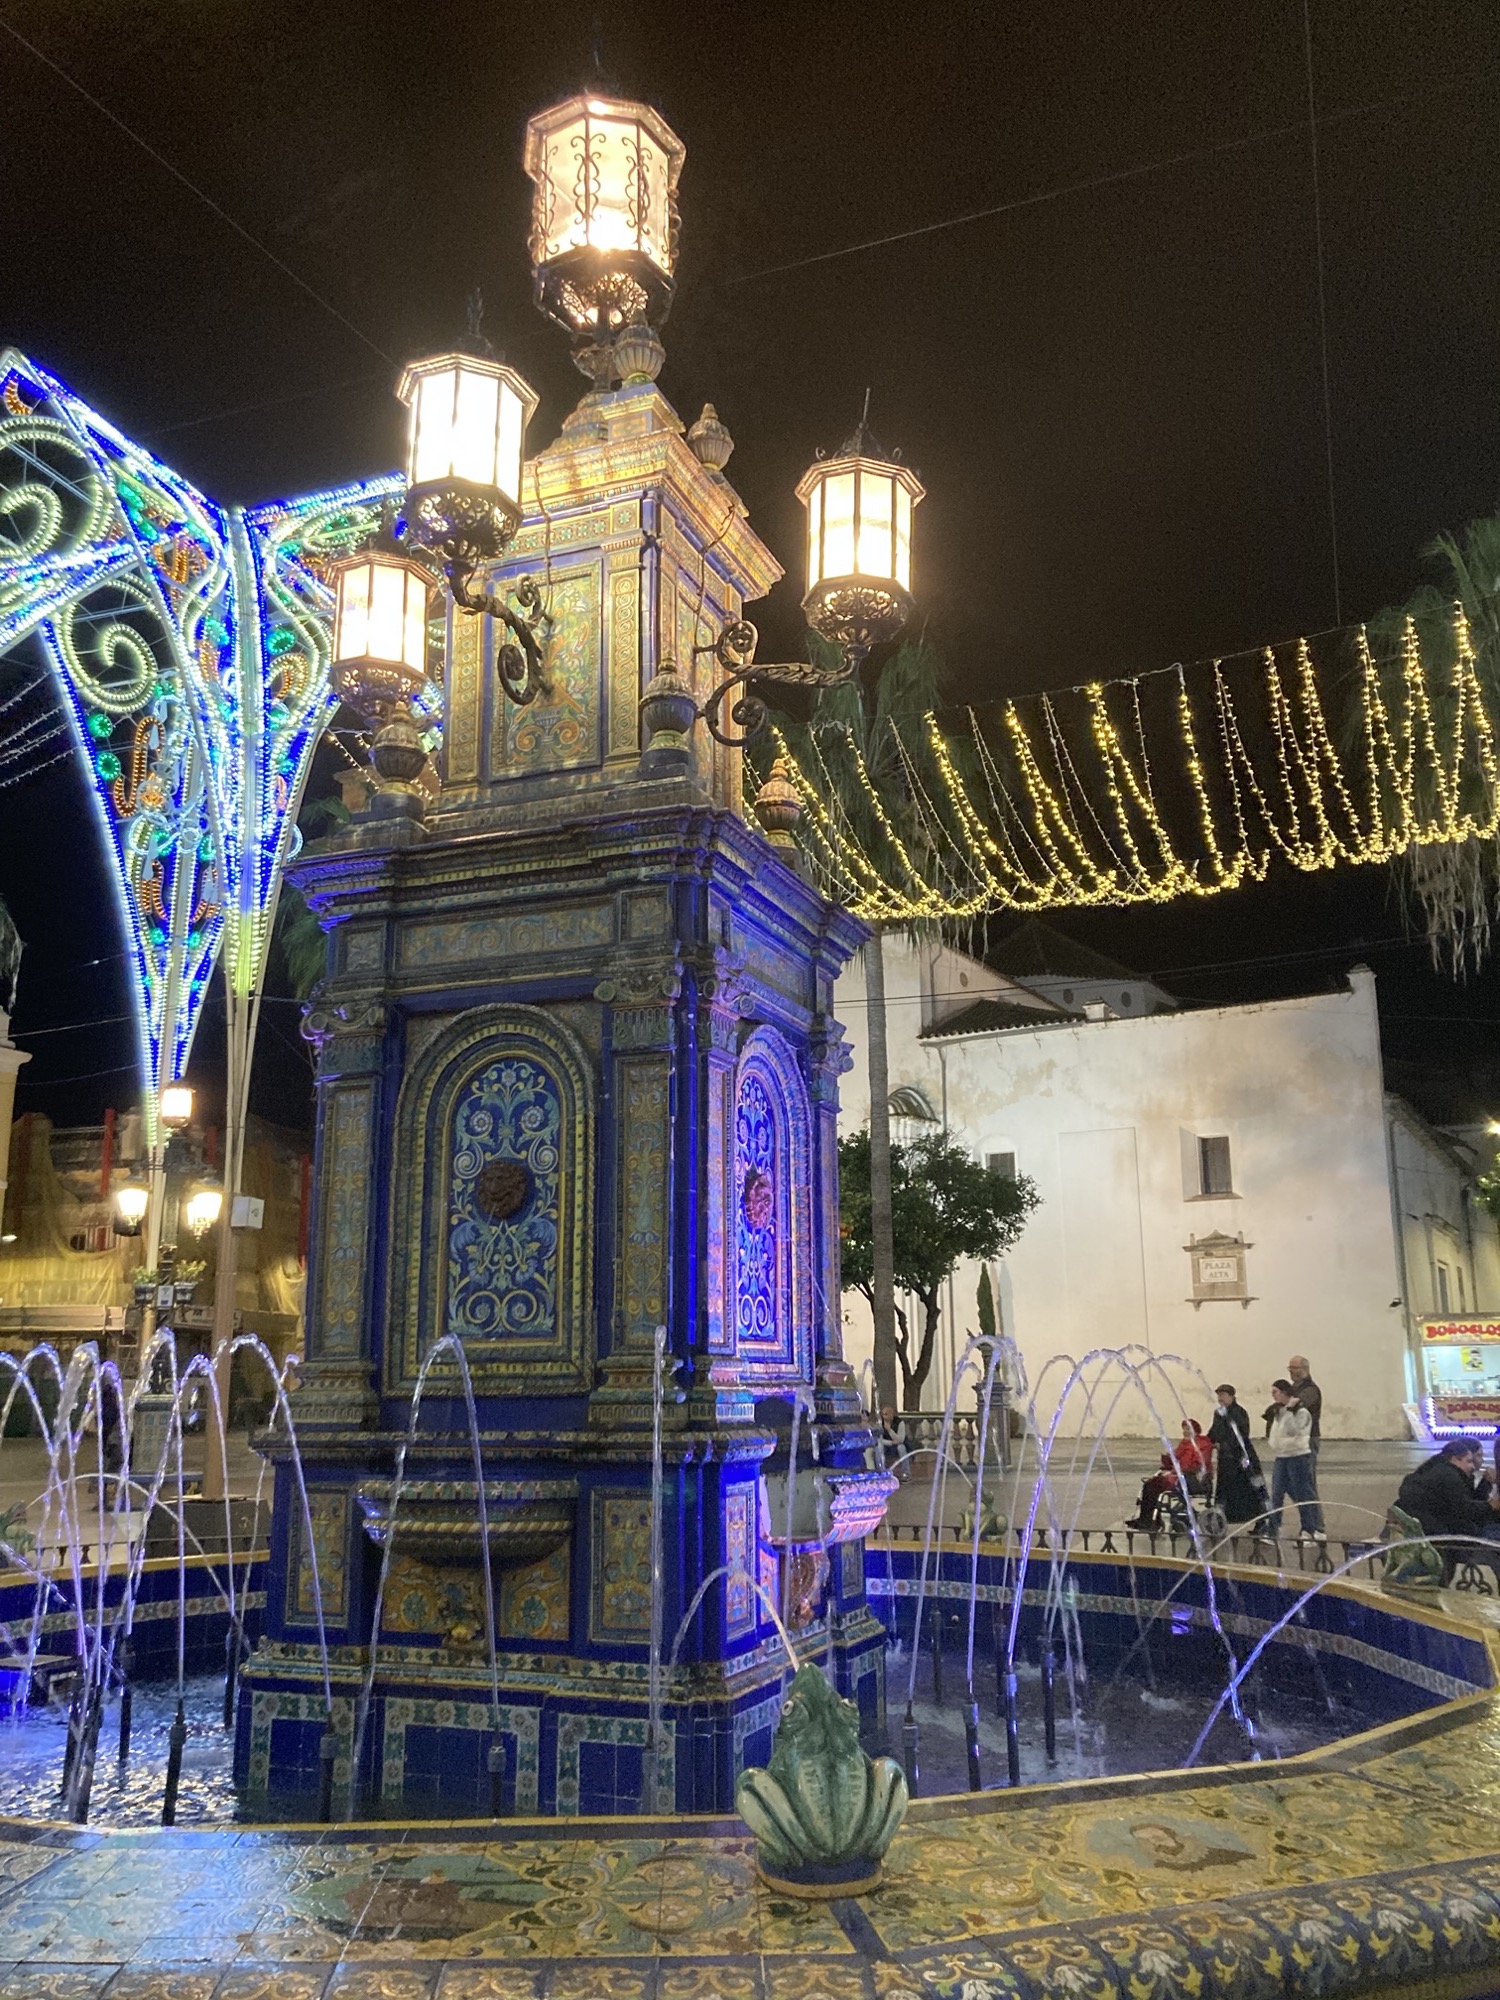 der Brunnen auf dem Hauptplatz von Algeciras ist mit einem detaillierten Mosaik geschmückt, die Säule in der Mitte ist mit vier Lampen gekrönt, rundherum spucken Froschskulpturen Wasserfontänen in den Brunnen, hinter dem Brunnen ist Weihnachtsbeleuchtung zu sehen